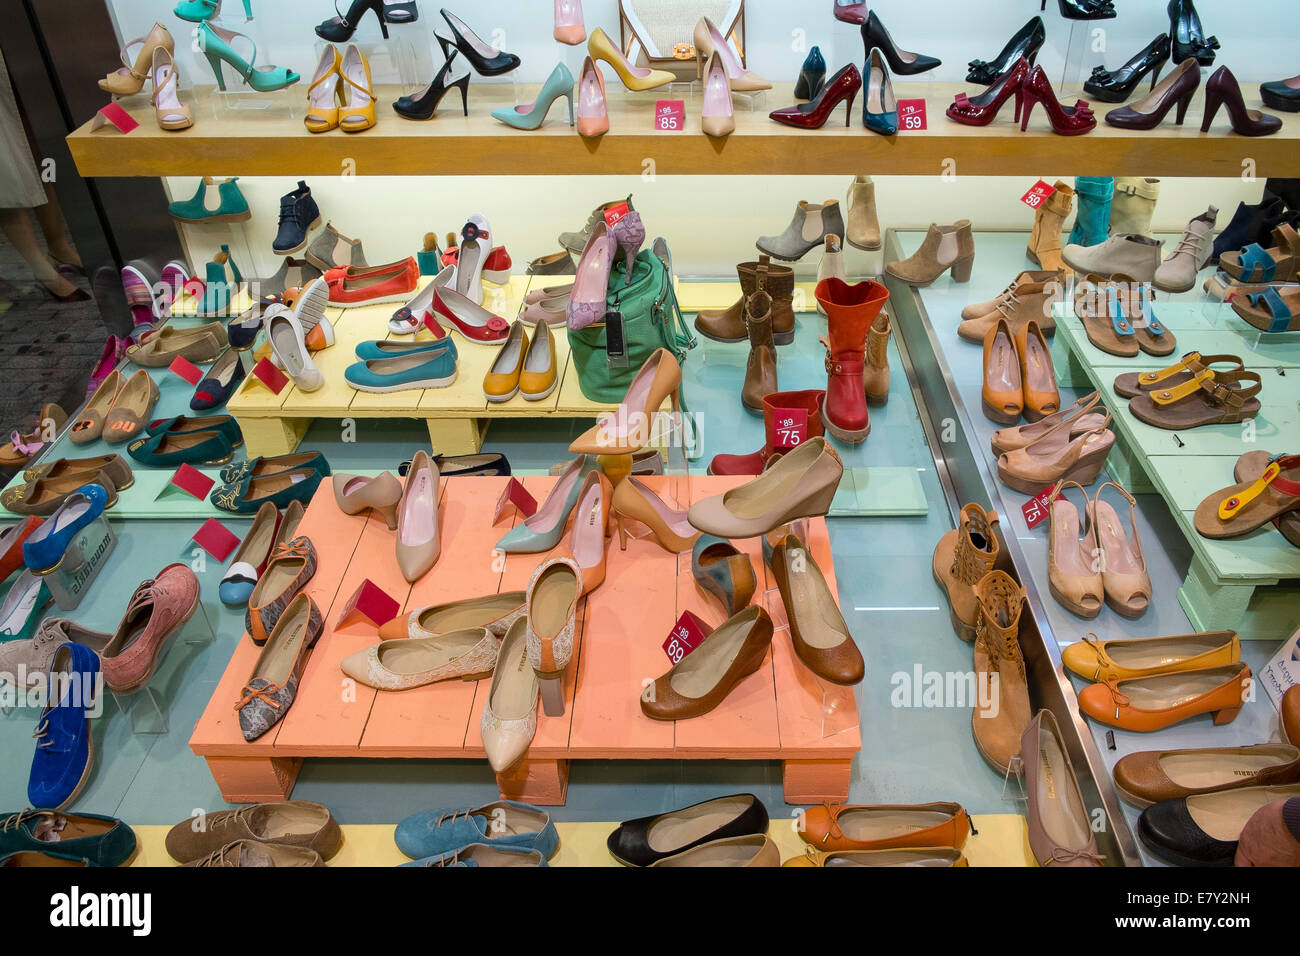 Présentation d'affichage de vitrine womens shoes shoe Banque D'Images